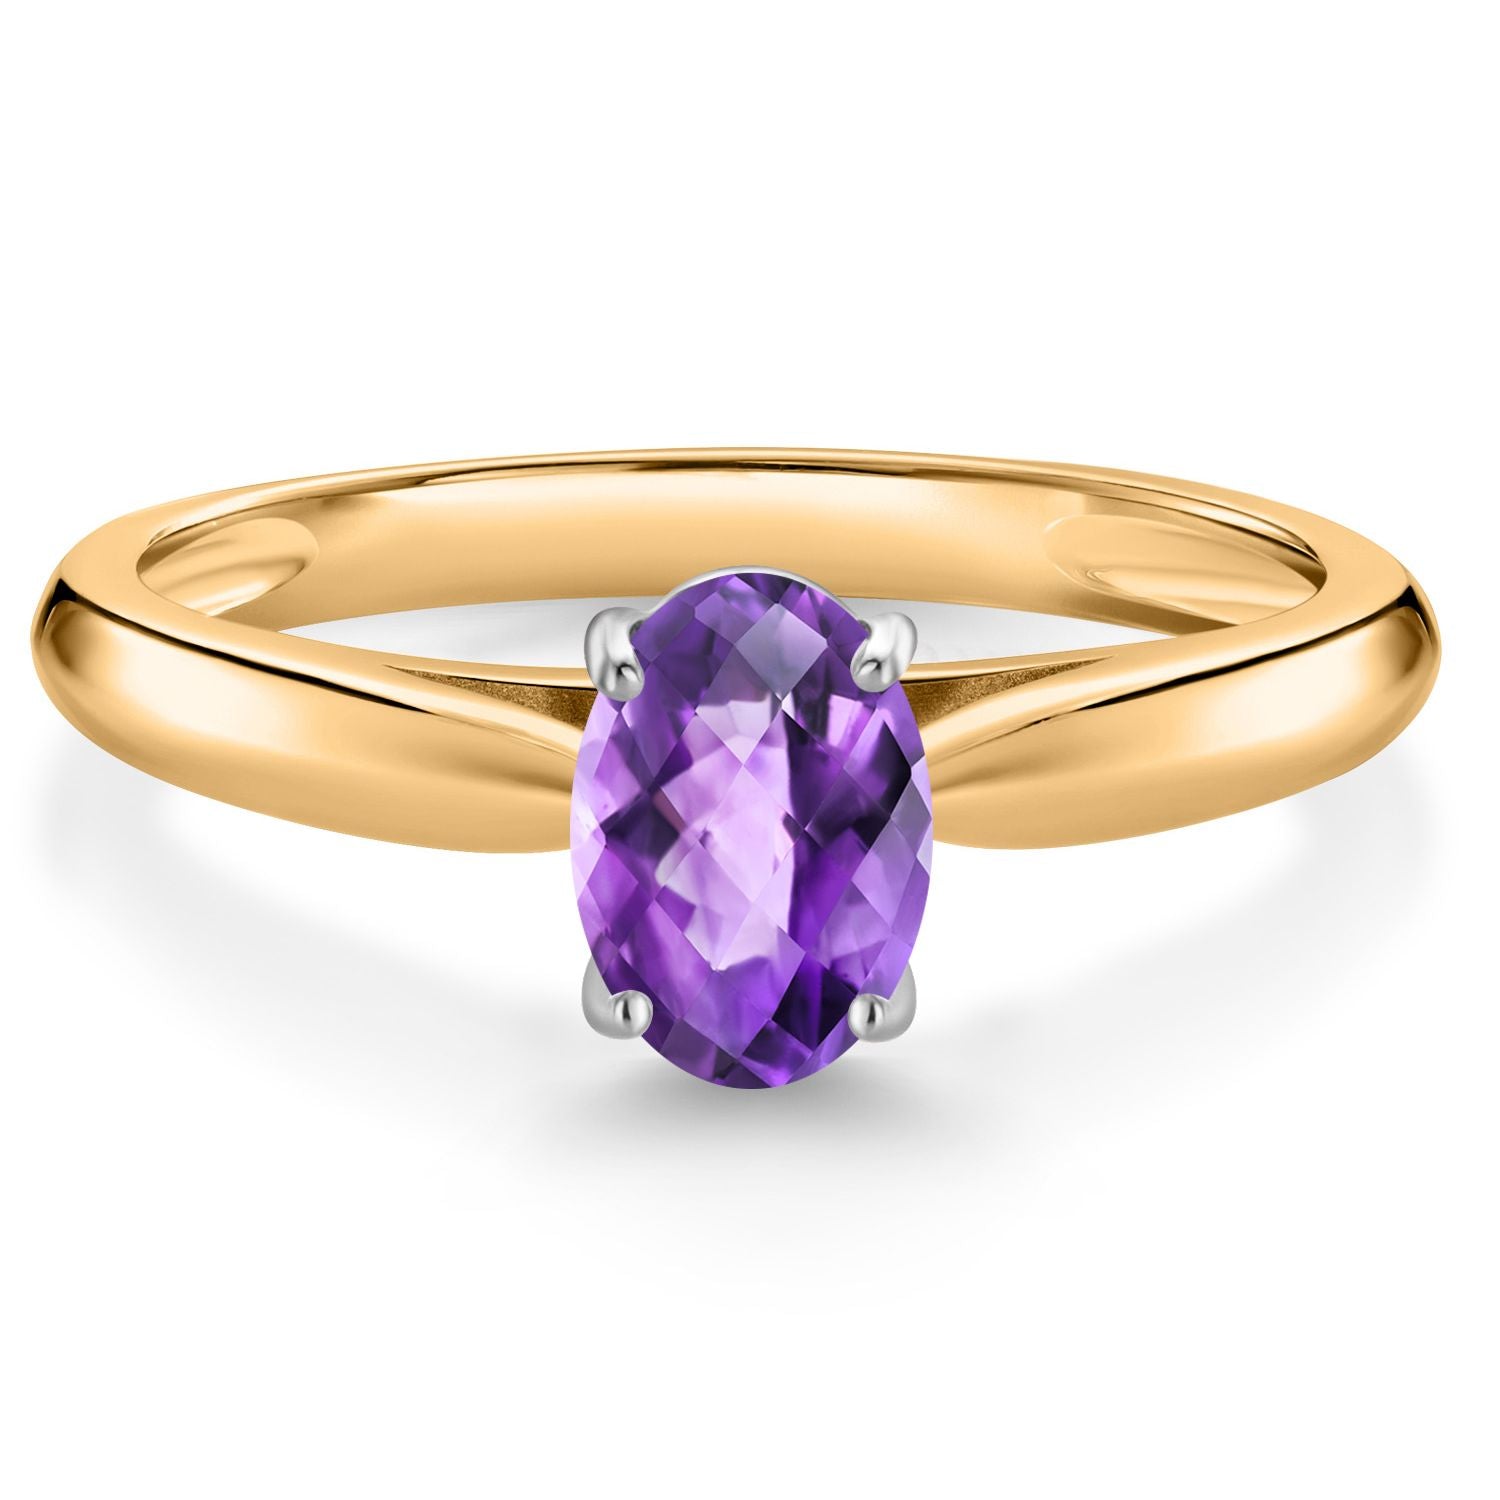 10金イエローゴールド 指輪 ヘキサグラム 一粒 2月の誕生石 アメシスト(紫水晶)